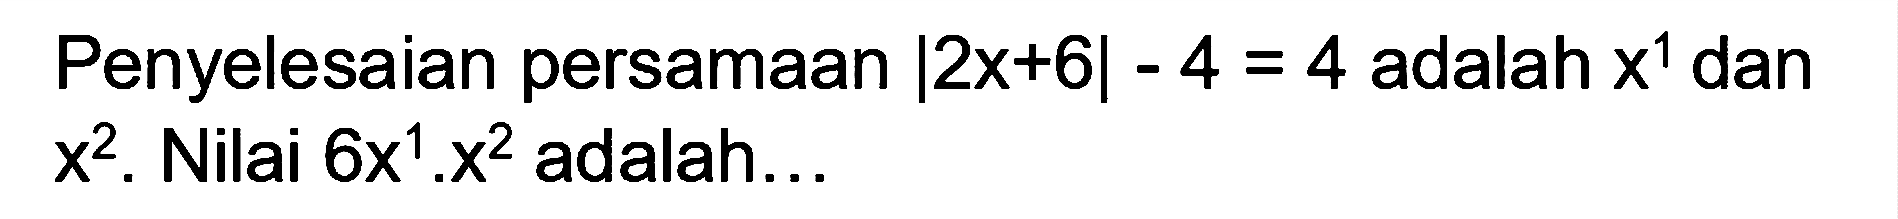 Penyelesaian persamaan |2x+6|-4=4 adalah x^1 dan x^2. Nilai 6x^1.x^2 adalah ...